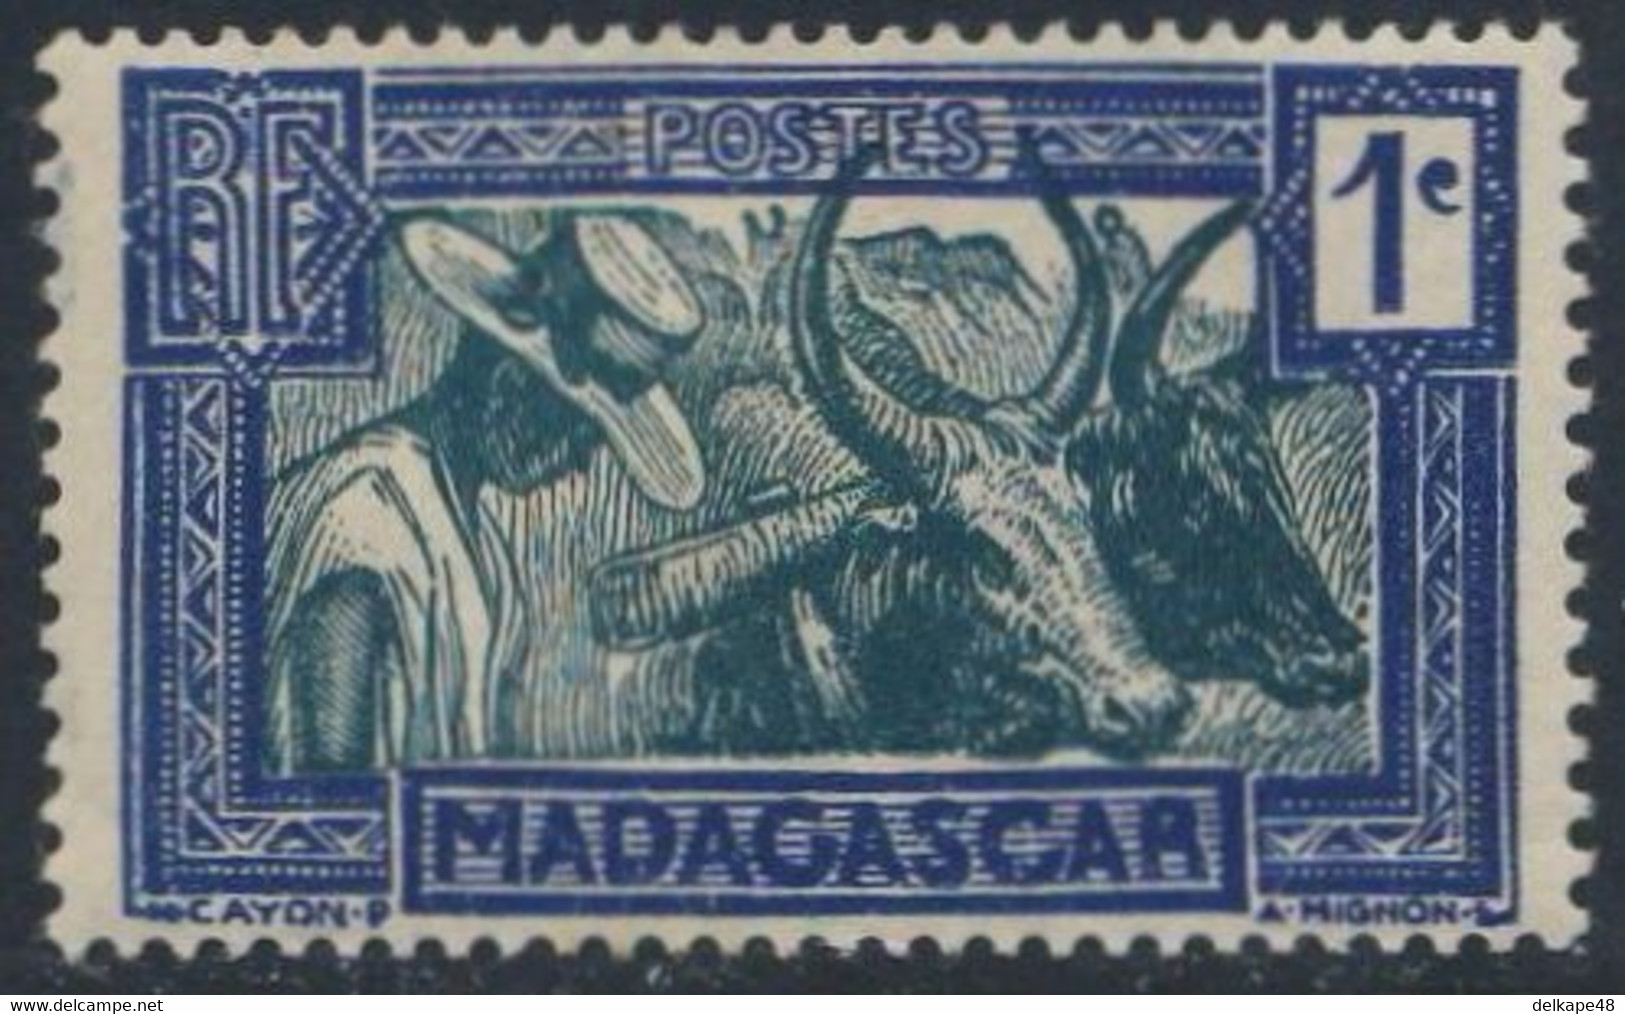 Madagascar 1930 Mi 180 YT 161A SG 123 * MH -  / Zebu-Gespann / Zebu-drawn Cart In Madagascar / Charrette Zébu - Agriculture